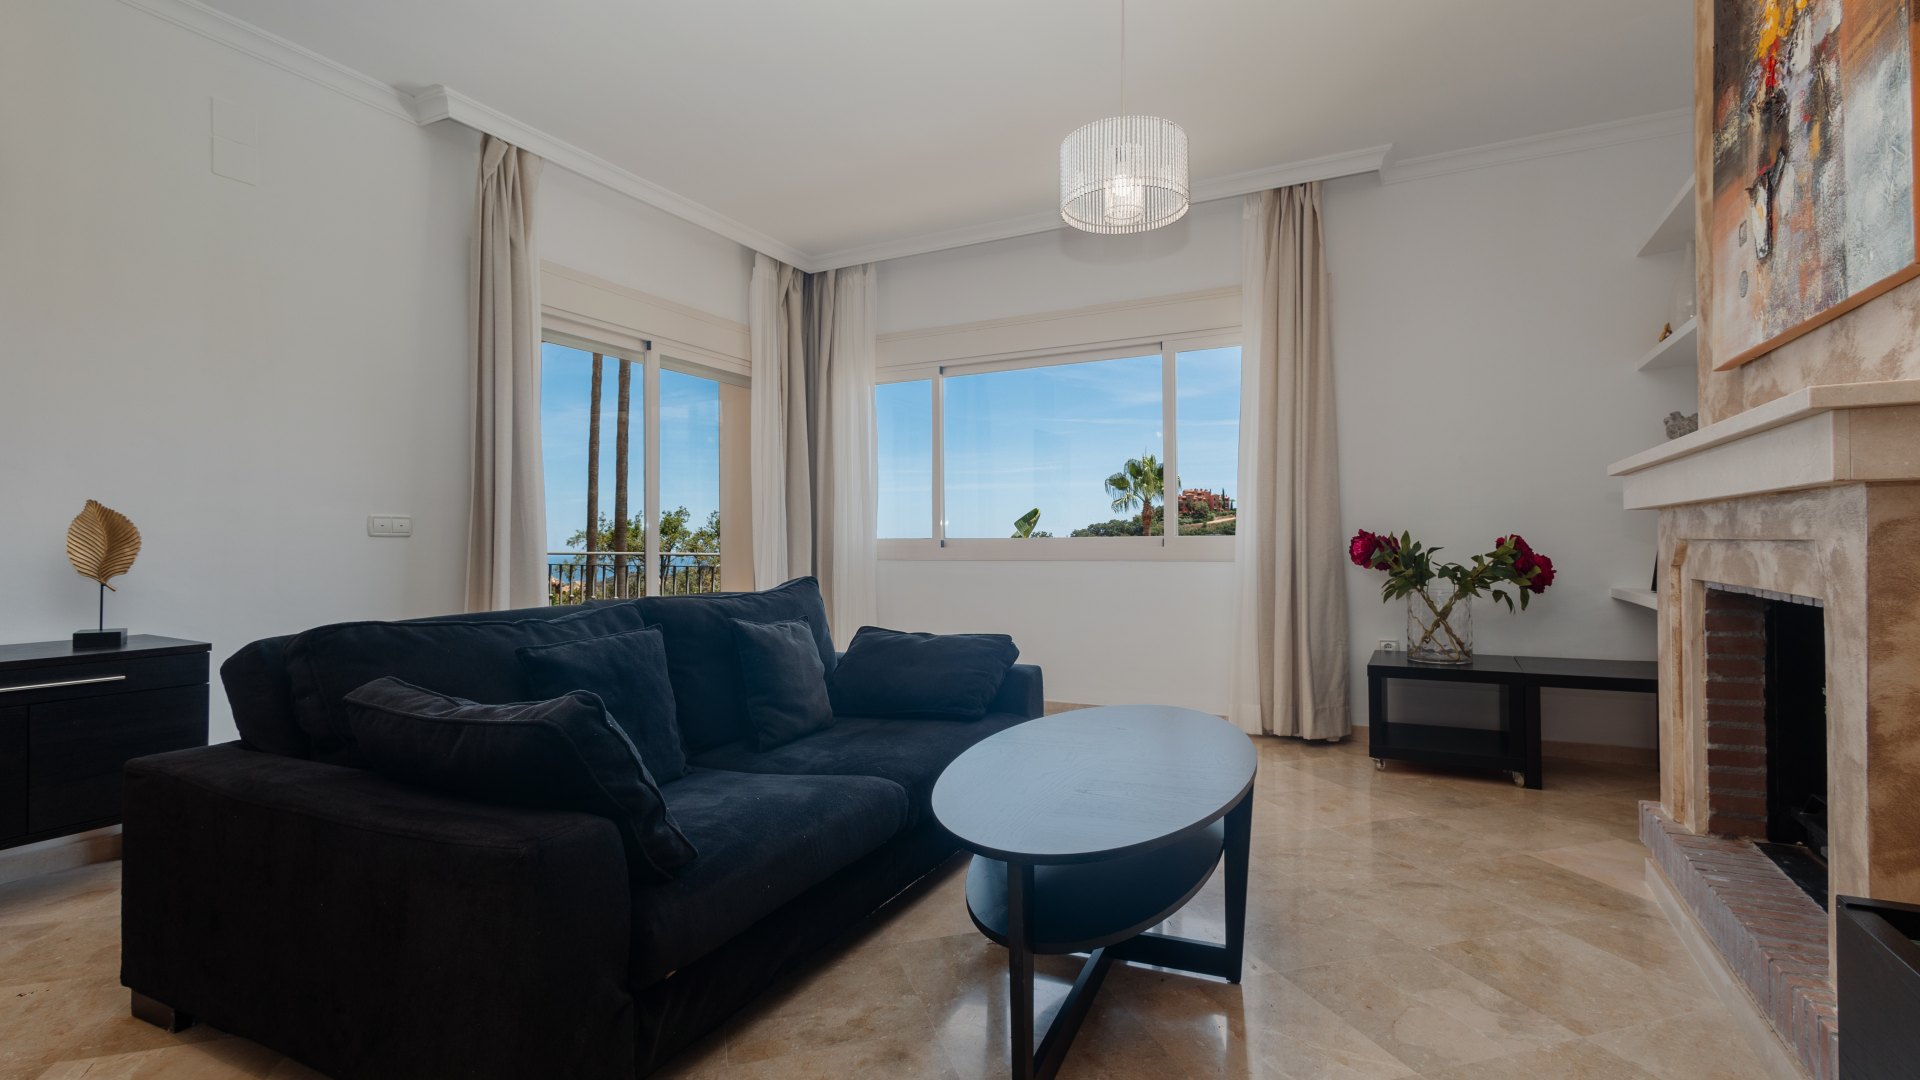 Exklusives Ferienhaus mit 2 Schlafzimmern in der Nähe von Golfplätzen in Marbella